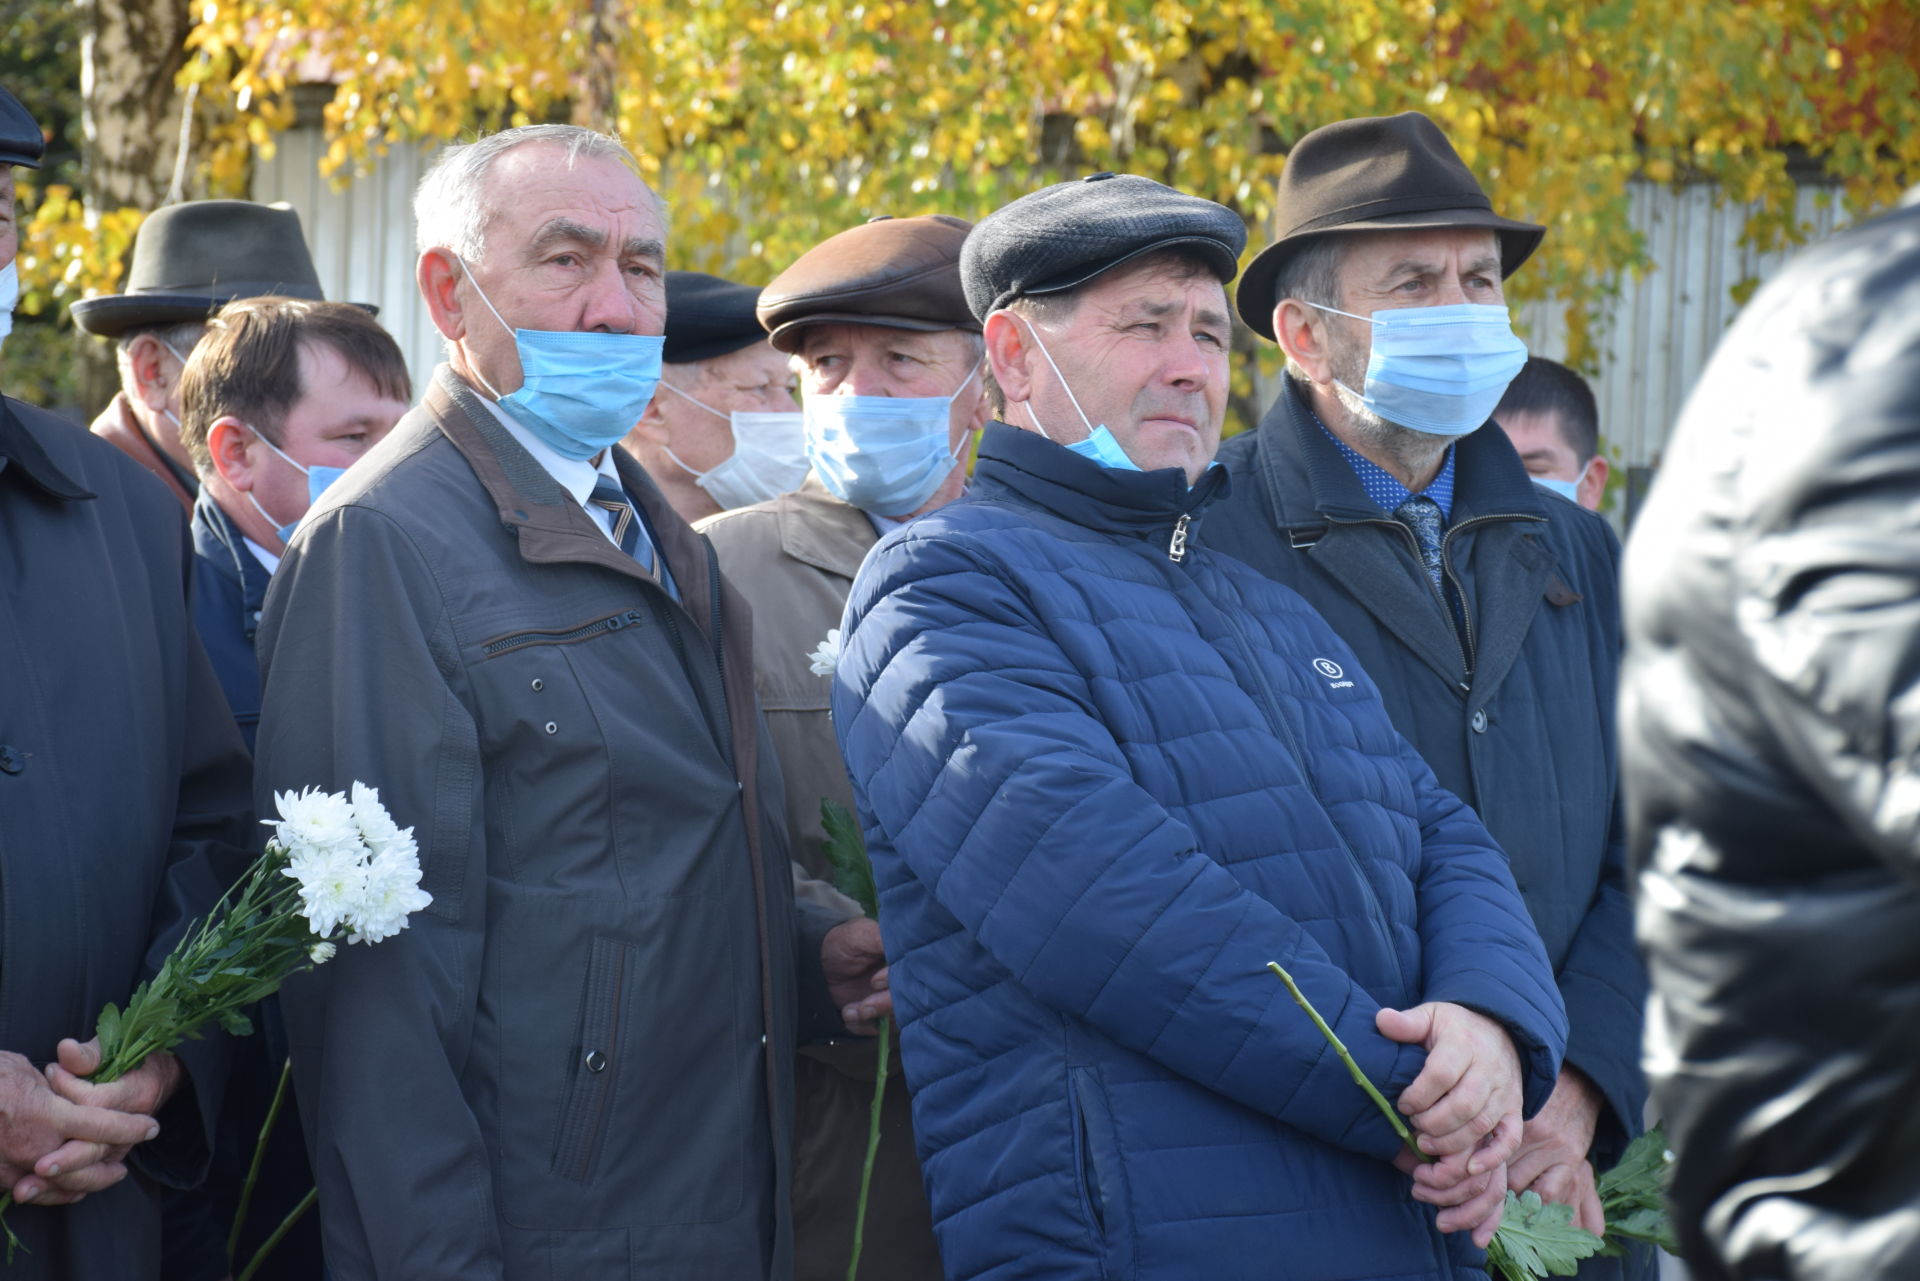 В Нурлате открыли памятник Герою Социалистического Труда Шарифу Хафизову